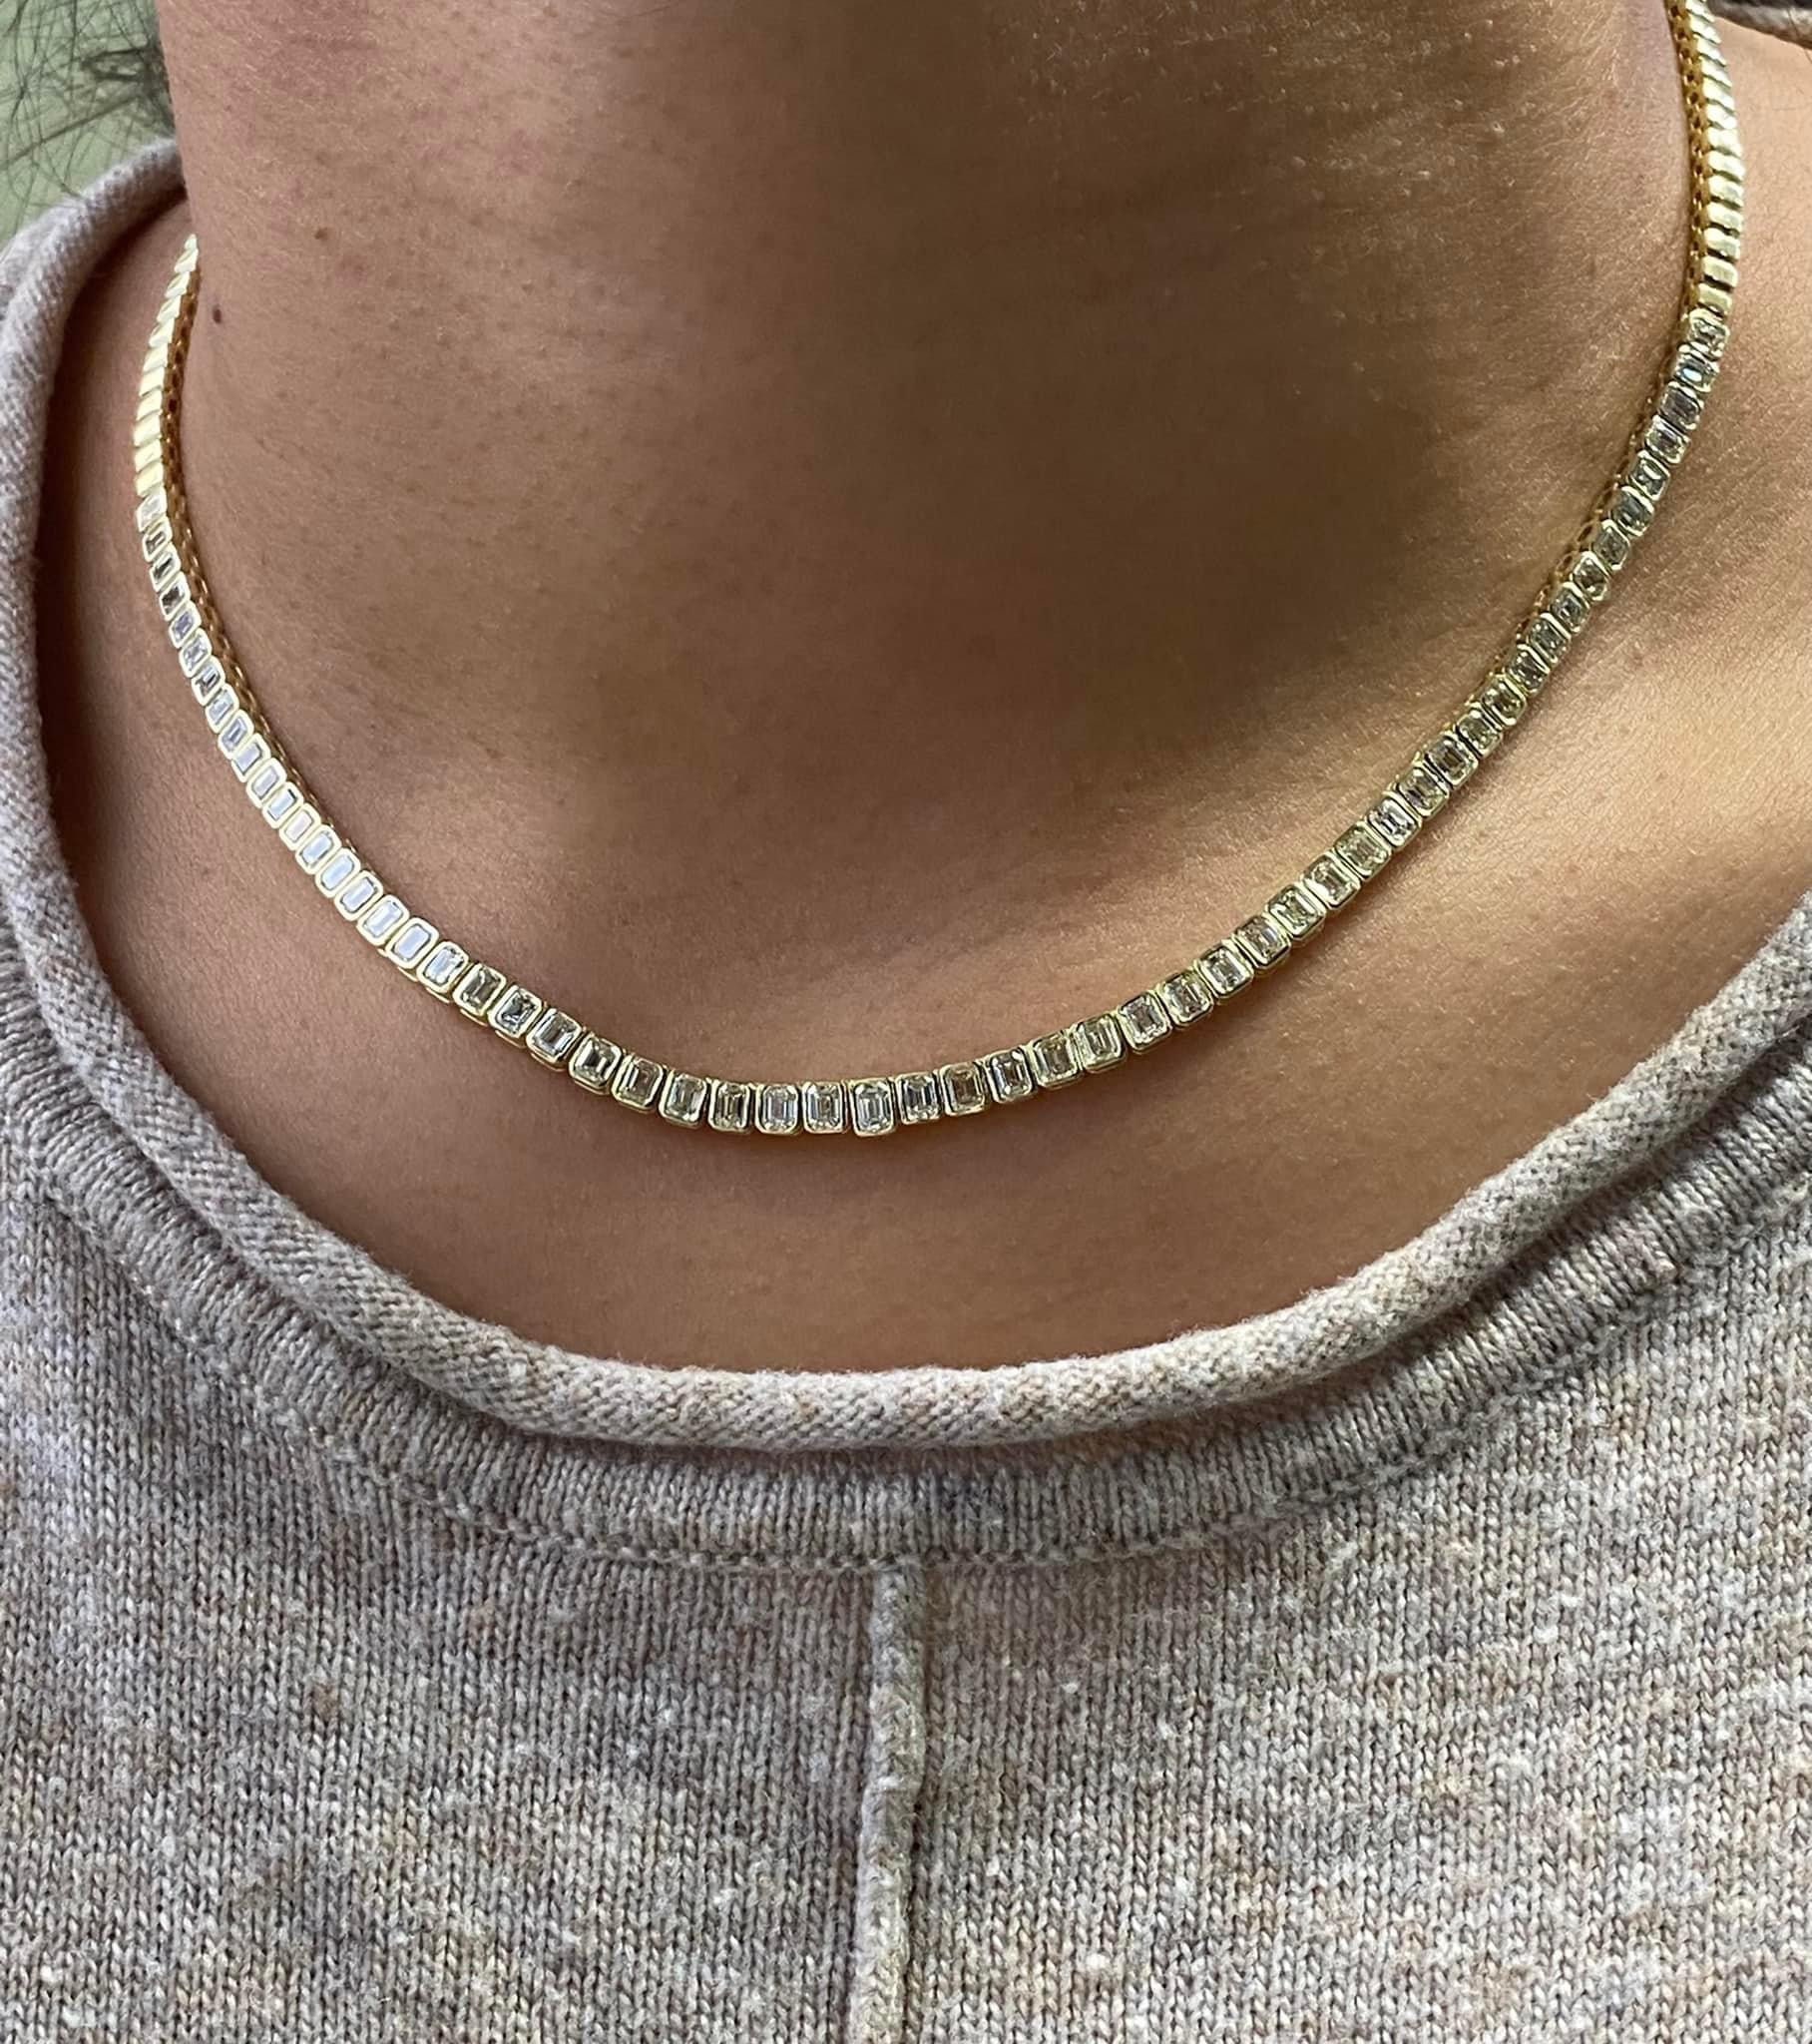 Ariana -37.00 Carat Pear Sapphire Pendant with 1.06 Carat Natural Diamonds 18K Gold